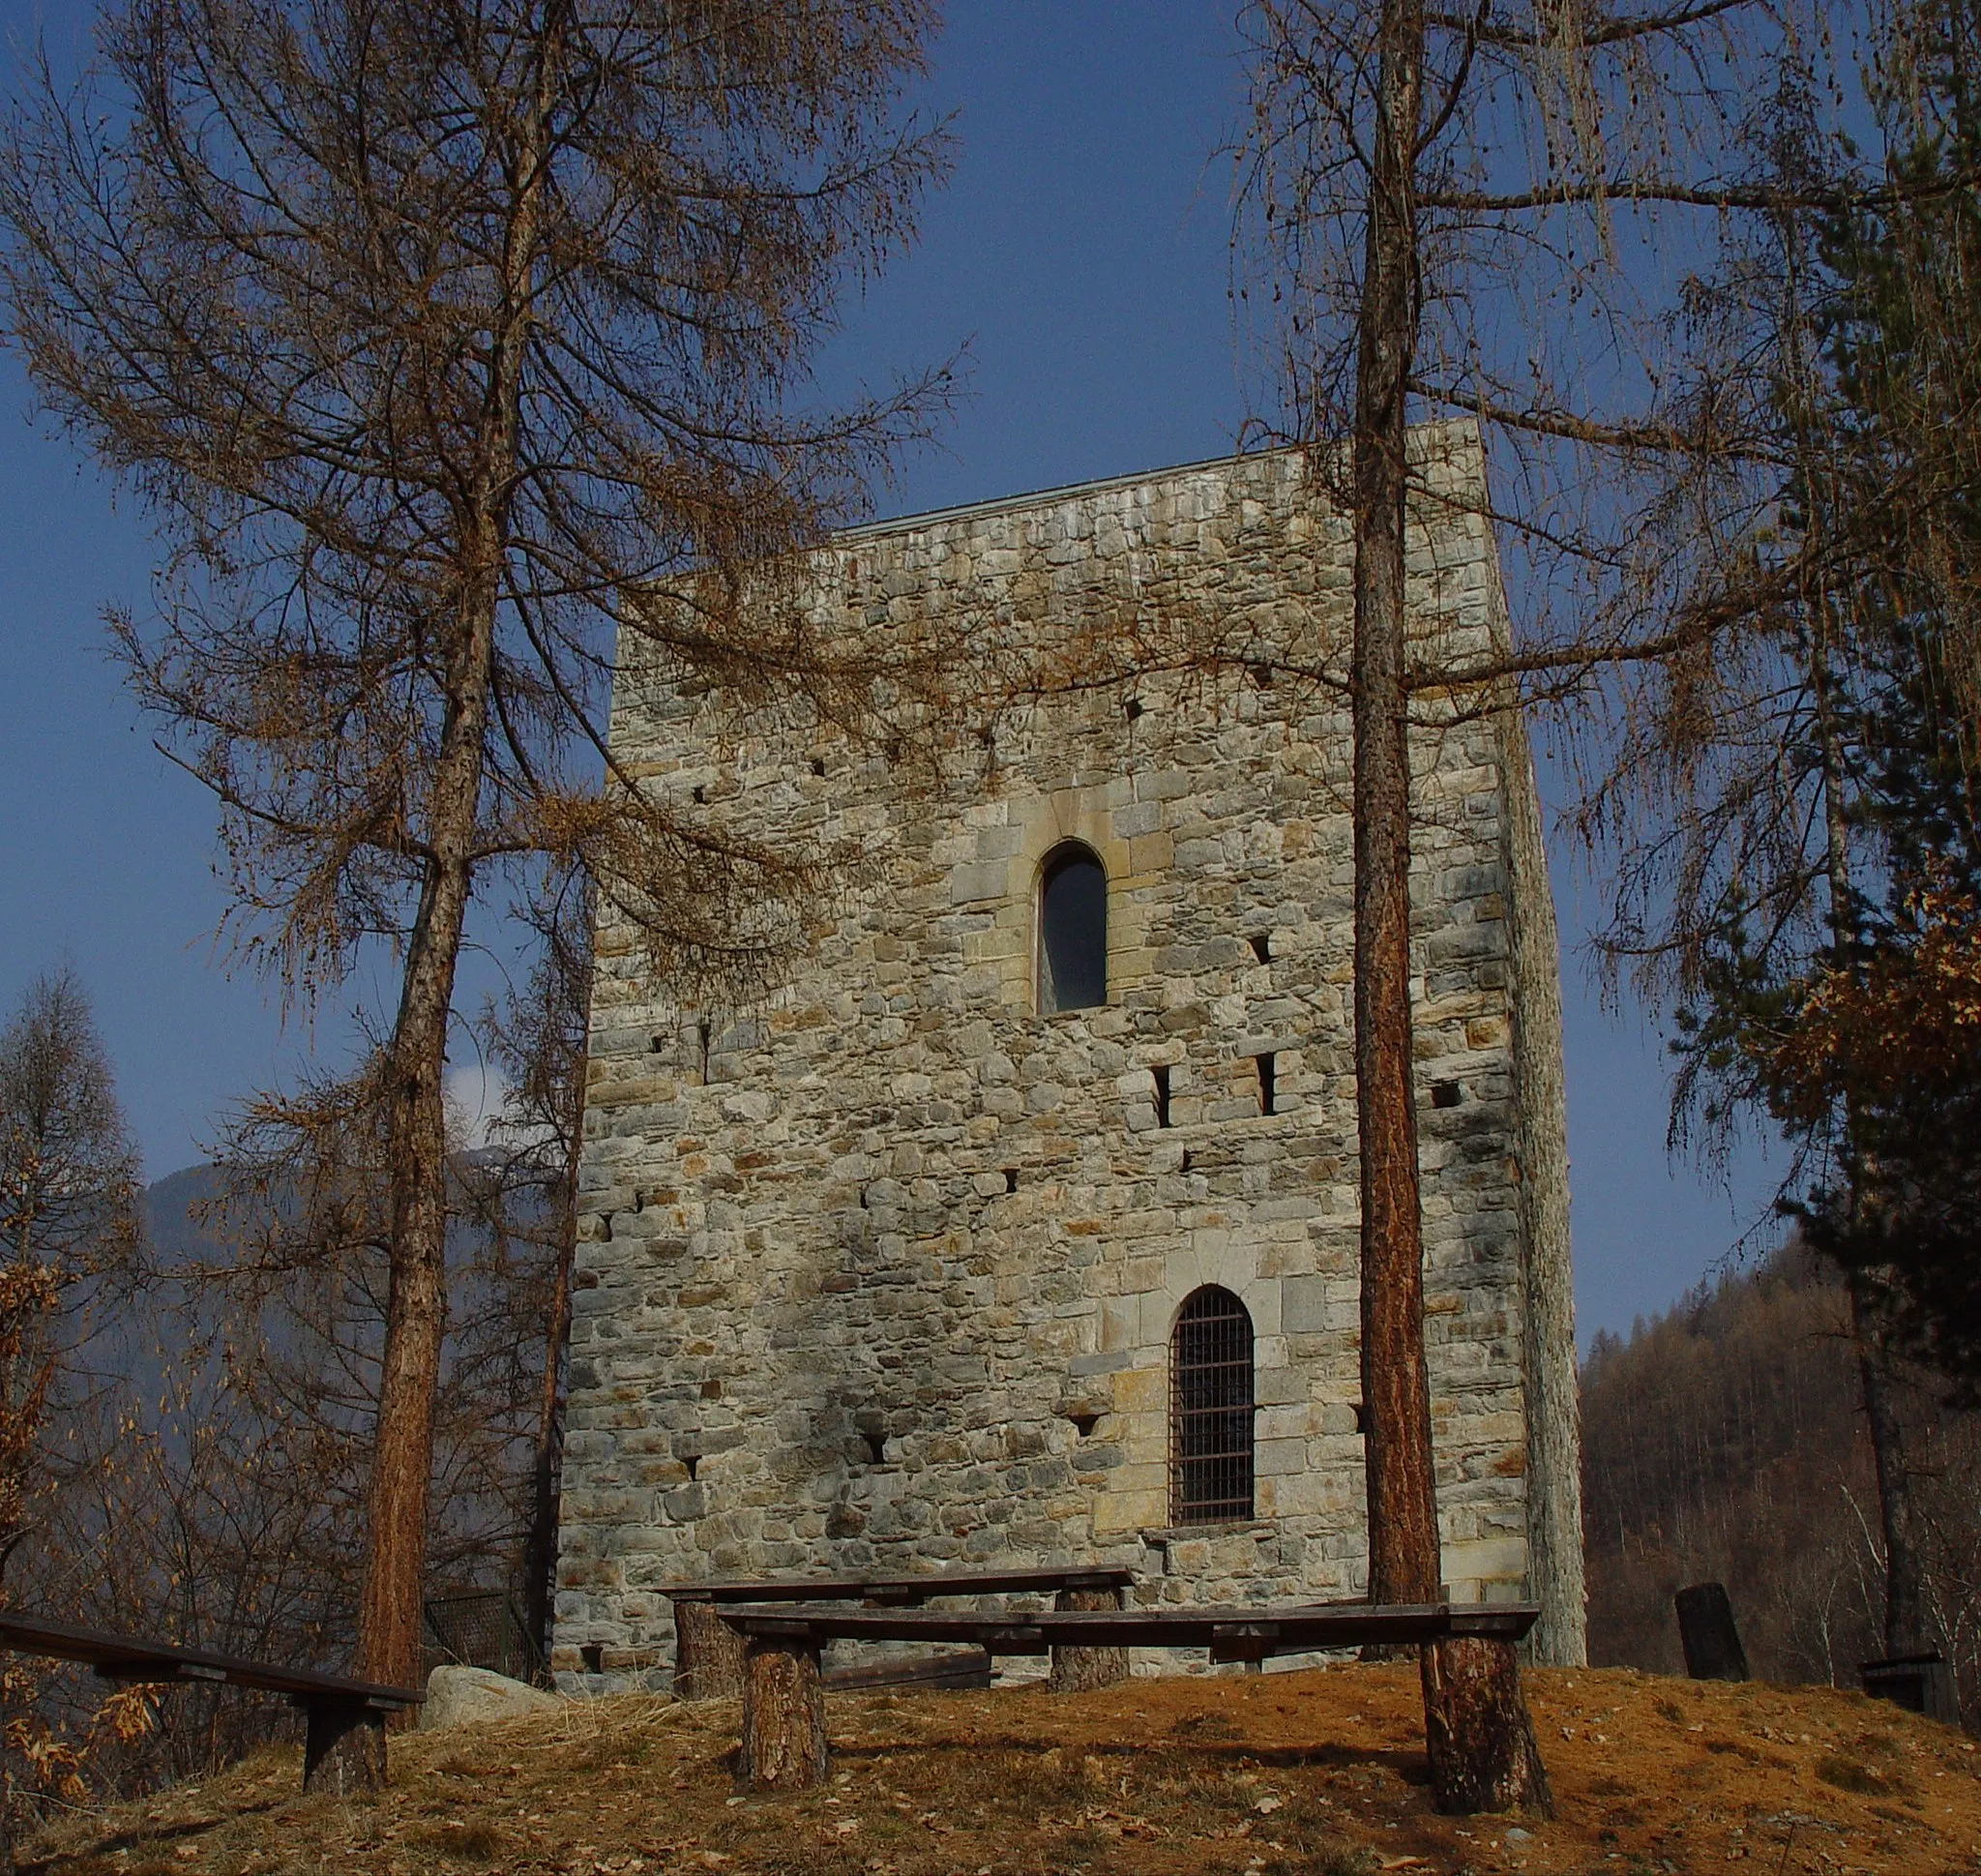 Photo showing: Description
Torre di Castionetto
Date
n/a
Location
Castionetto, Chiuro, Sondrio - Italy
Photographer
Franco Folini